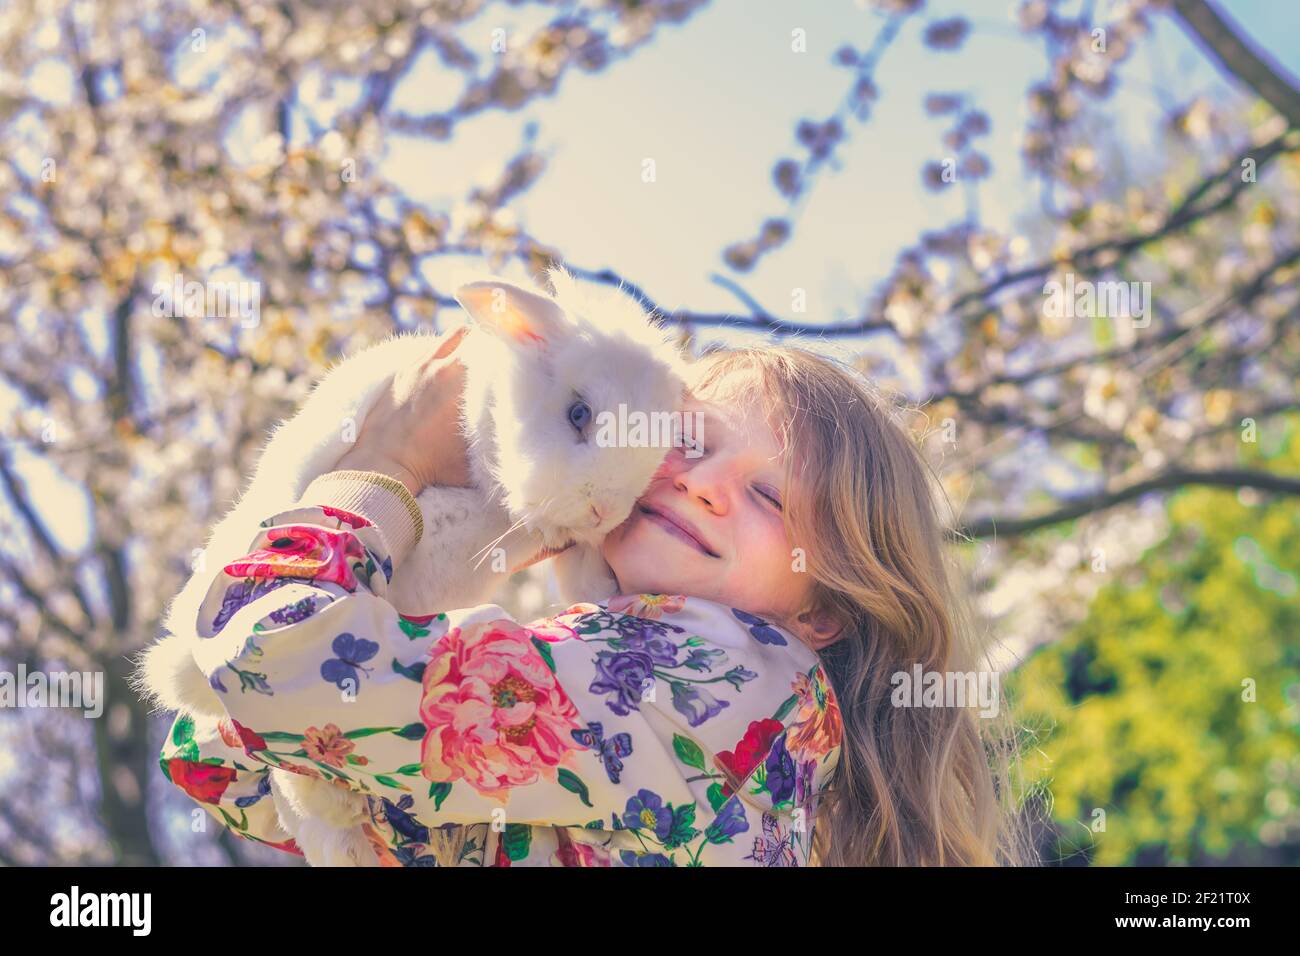 Liebenswert schöne Mädchen mit langen blonden Haaren umarmt weißen Ostern Kaninchen Tier in Magie bunten Frühling Natur unter Bäumen Stockfoto